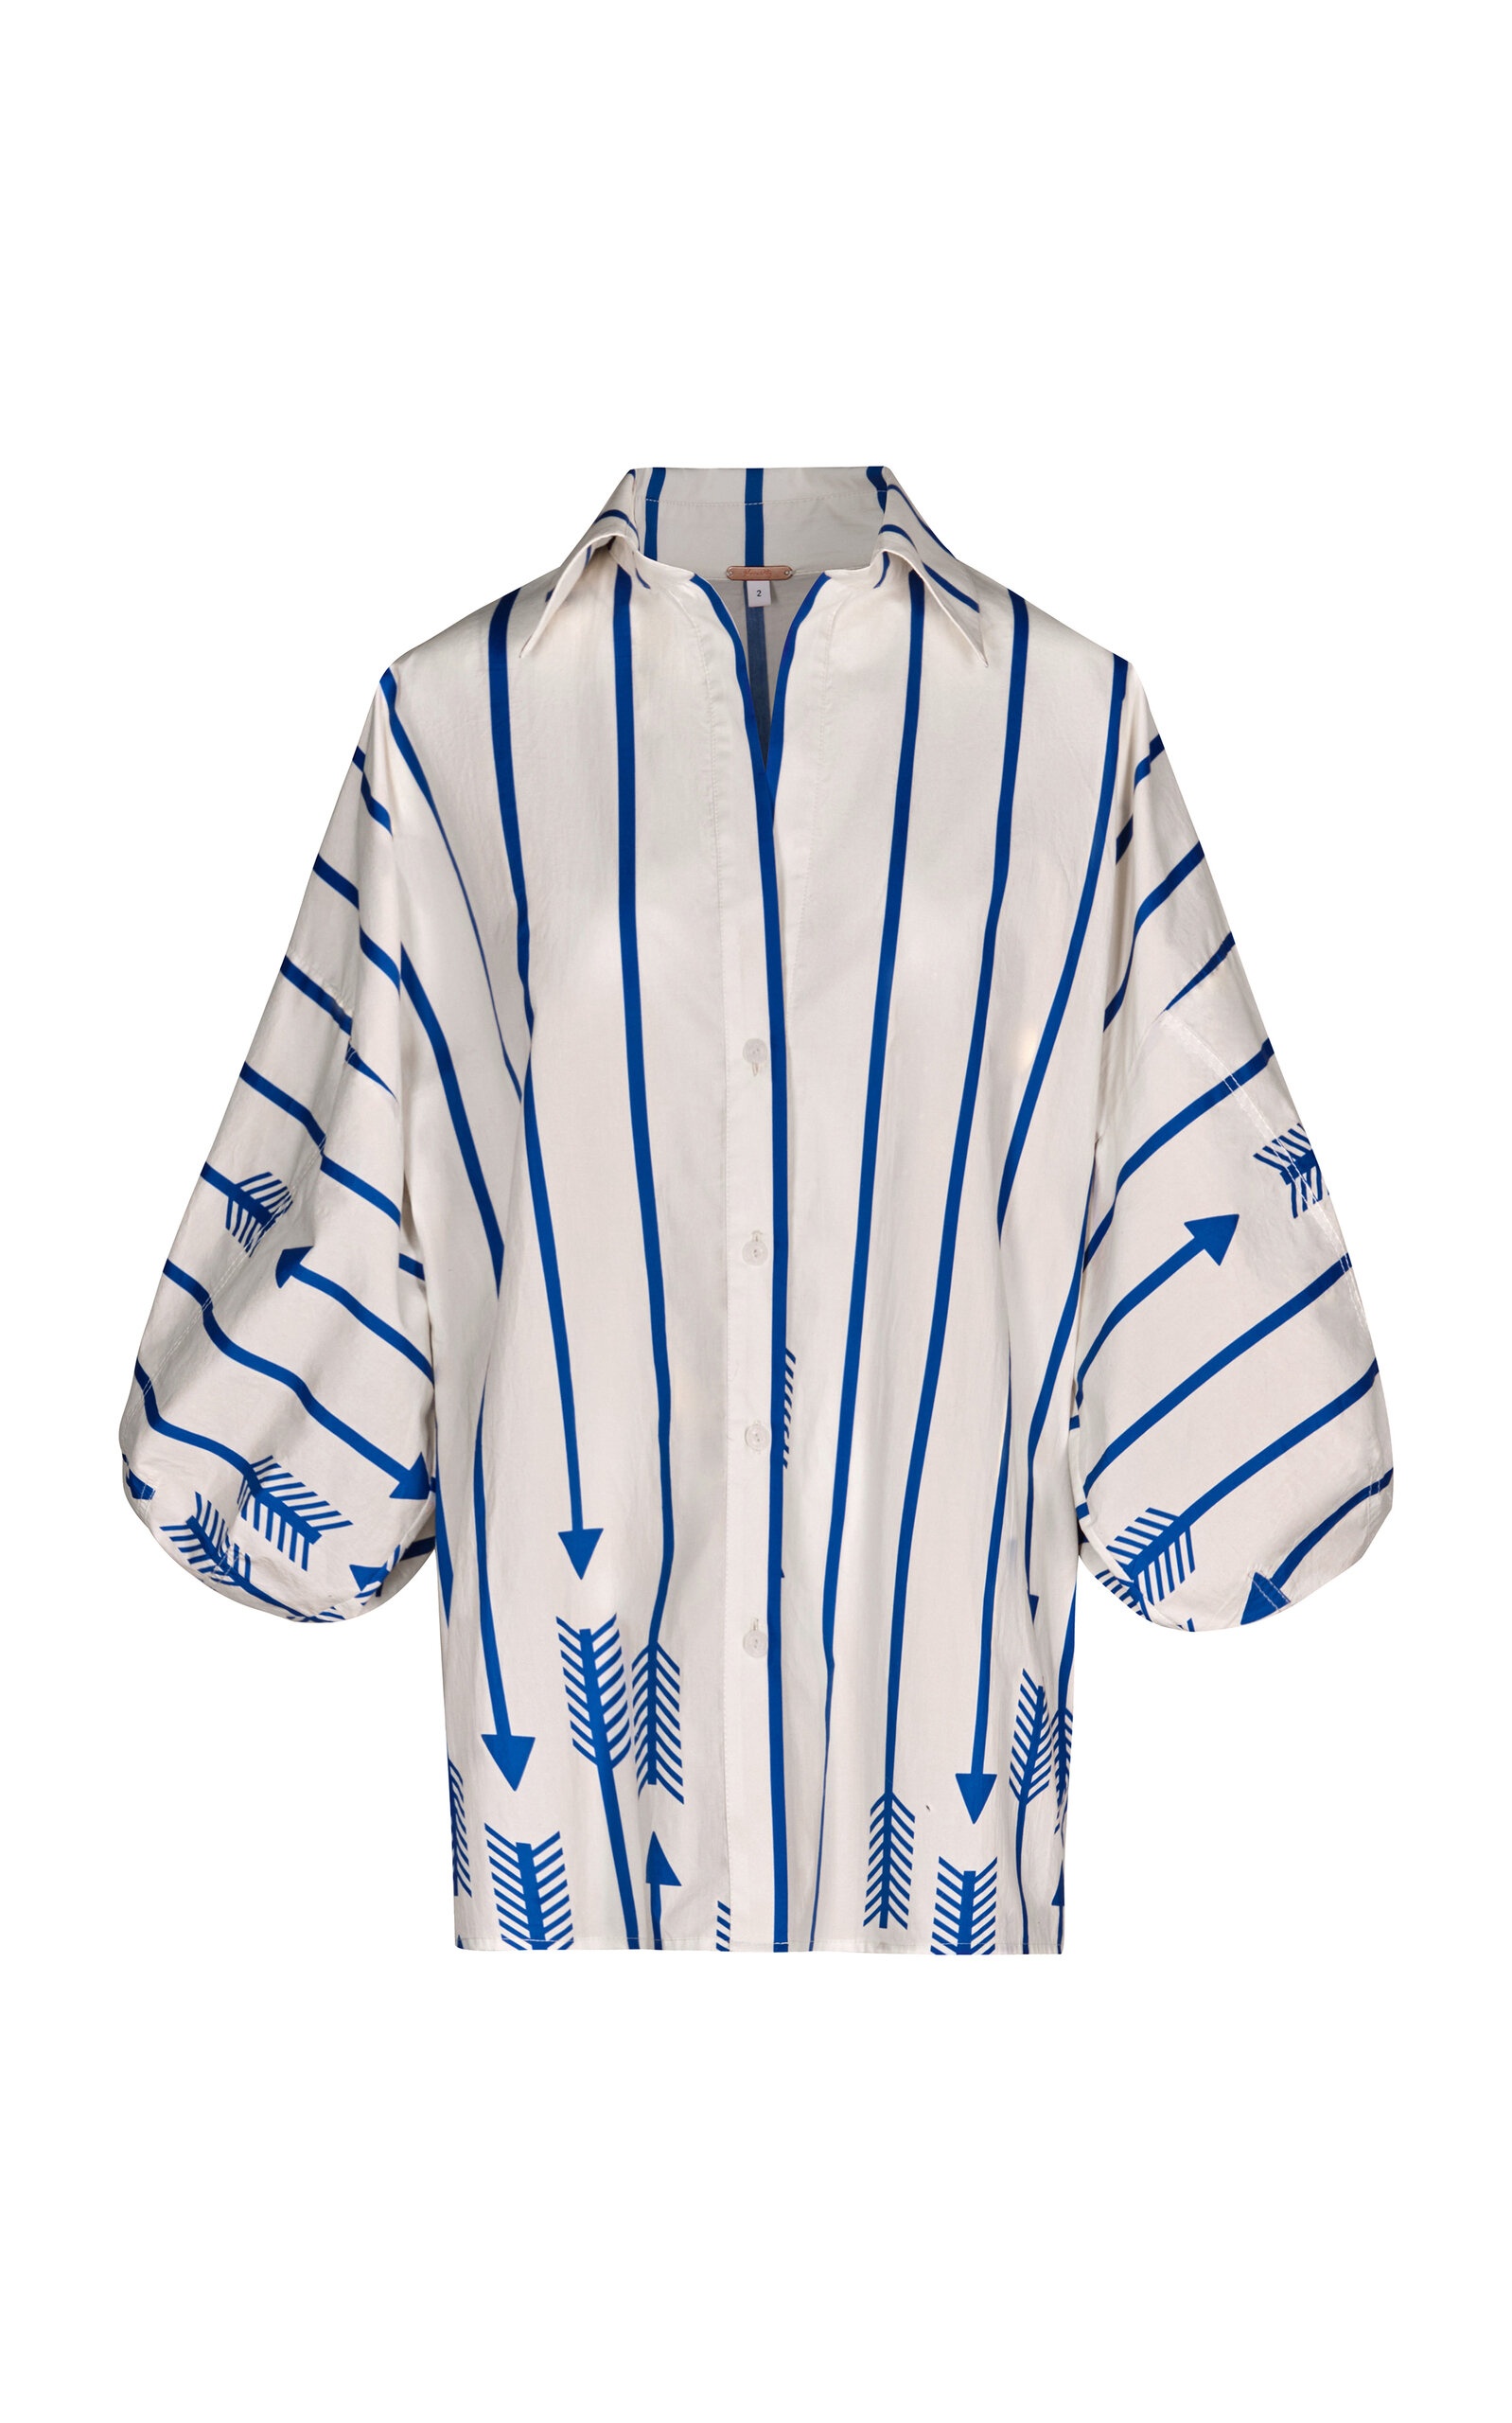 Flechada Striped Cotton Shirt stripe - 1